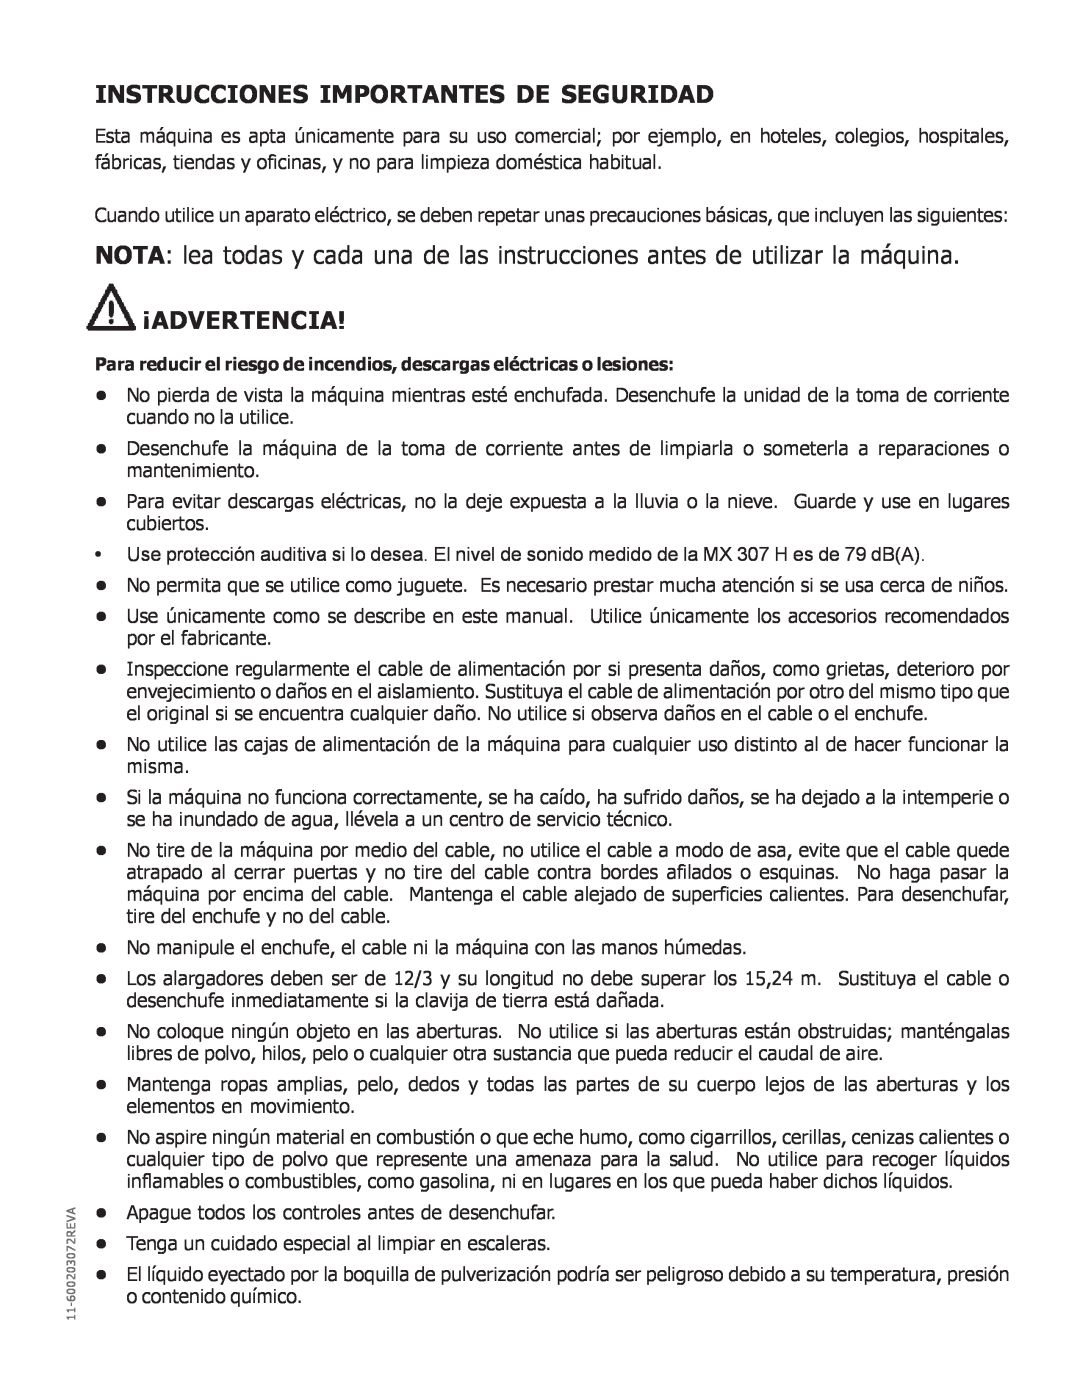 Nilfisk-Advance America MX 307 H instruction manual Instrucciones Importantes De Seguridad, ¡Advertencia 